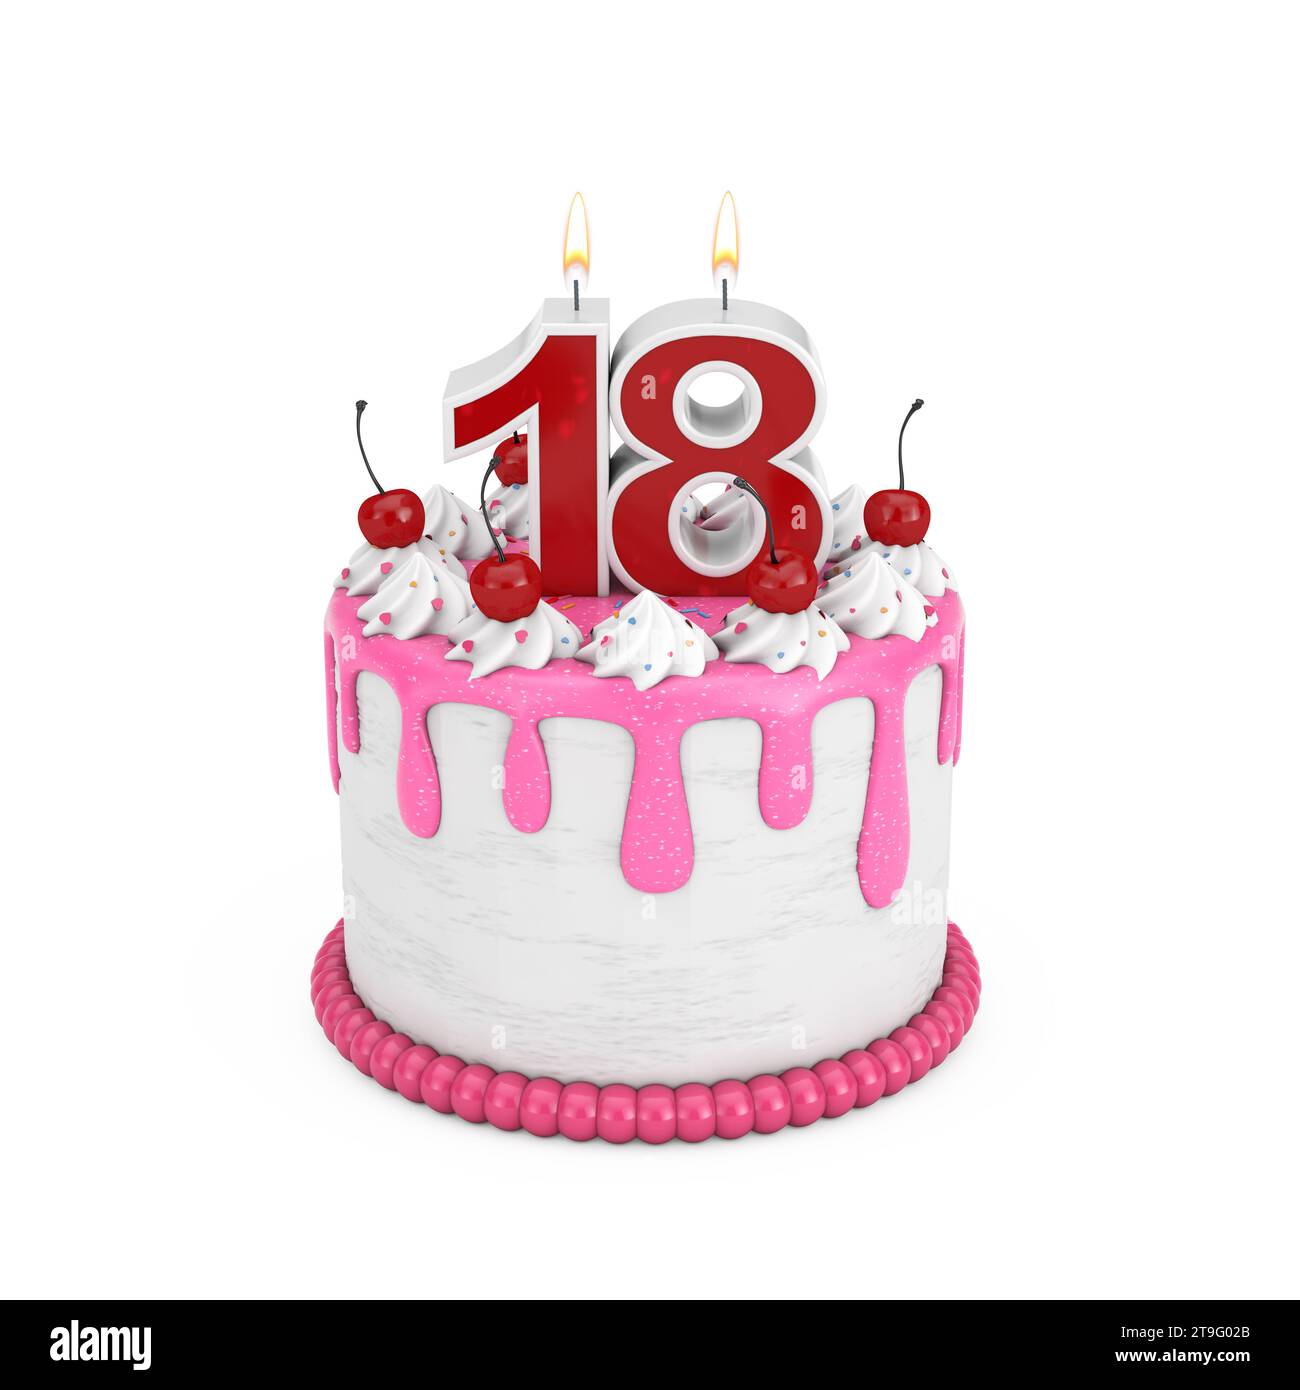 Vela de cumpleaños 18 años: Esta vela representa el número 18. Es